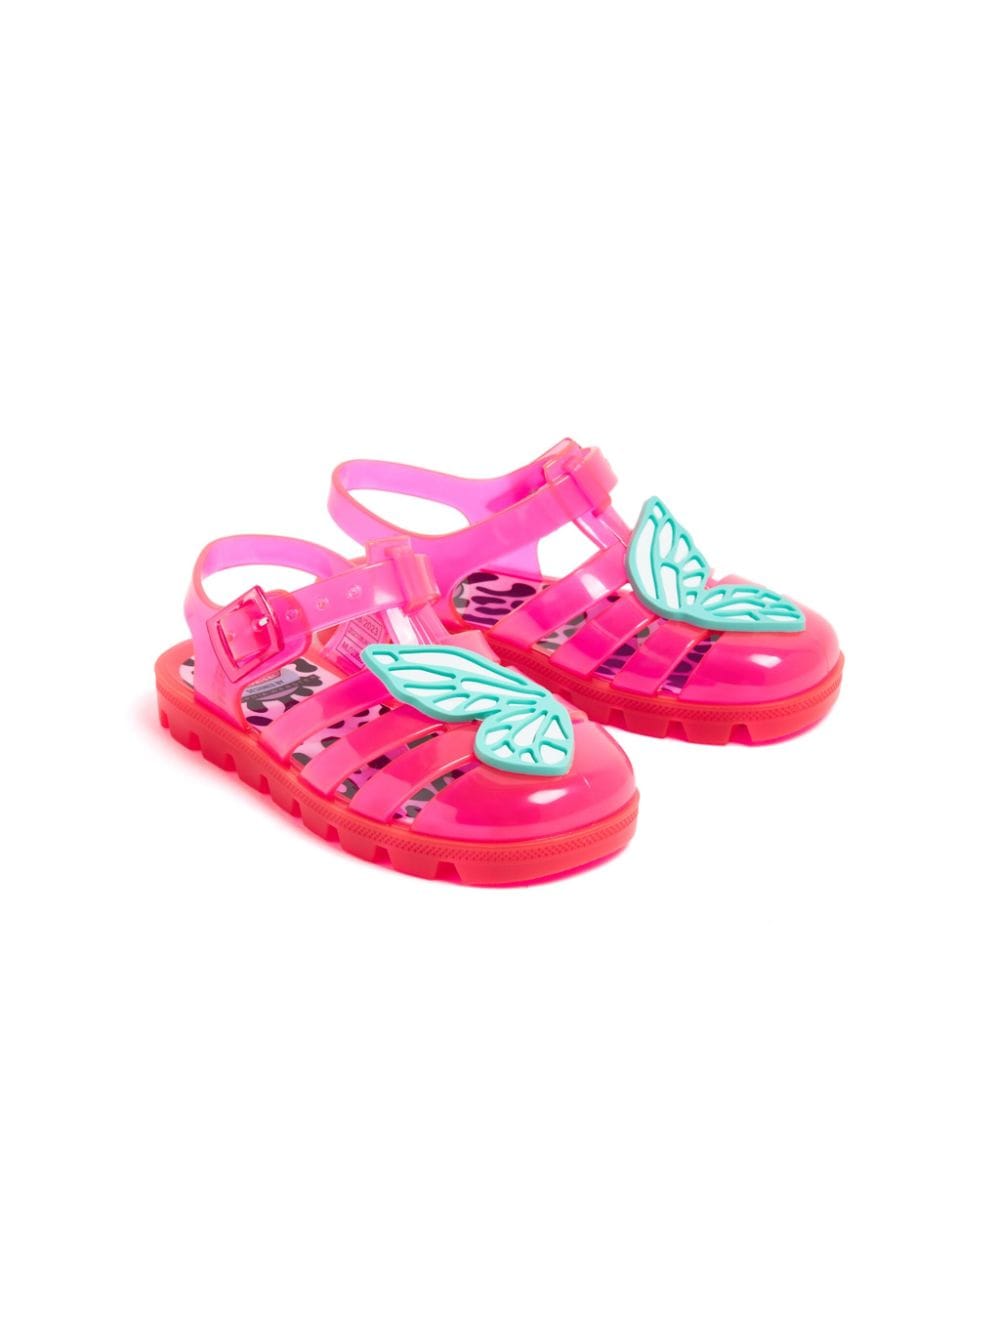 Sophia Webster Mini Diva Butterfly jelly sandals - Pink von Sophia Webster Mini